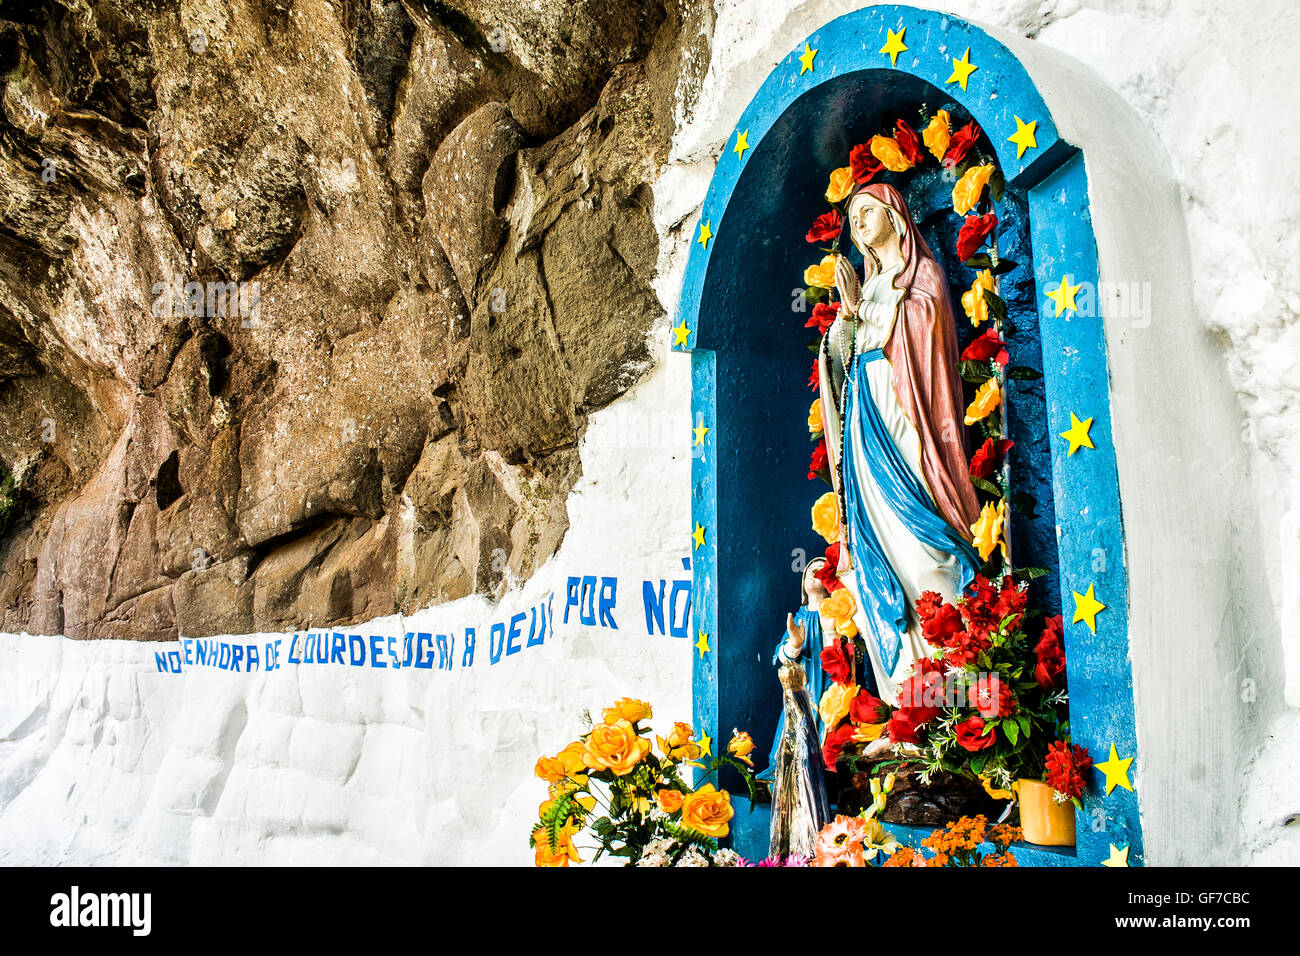 Monument to Our Lady of Lourdes. Sao Lourenco do Oeste, Santa Catarina, Brazil. Stock Photo